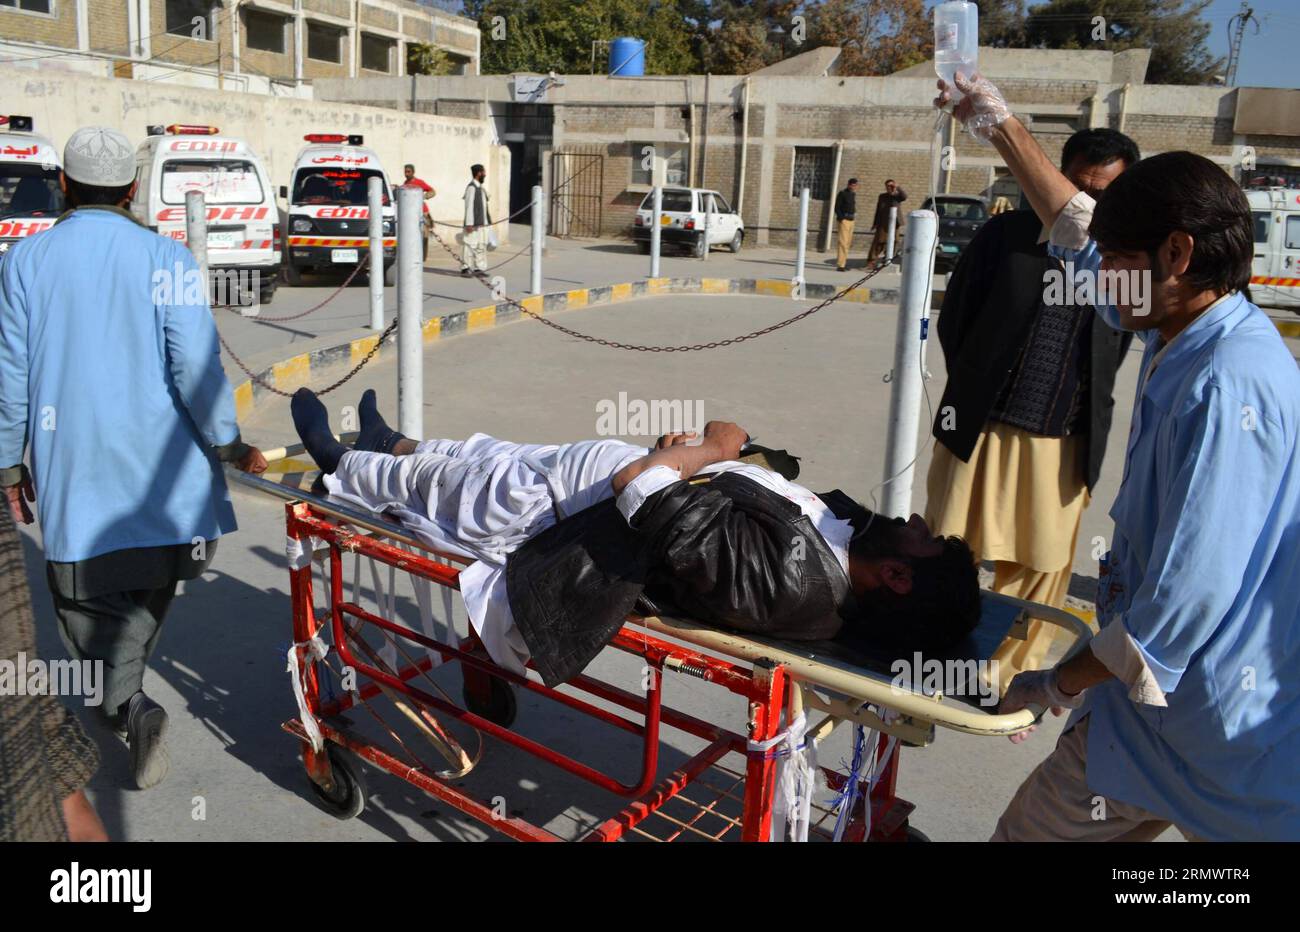 (141111) -- QUETTA, 11 novembre 2014 -- i soccorritori trasferiscono un uomo ferito in un ospedale da un sito di esplosione bomba nel sud-ovest del Pakistan S Quetta l'11 novembre 2014. Almeno tre persone sono state uccise e altre 25 ferite in due esplosioni di bombe separate in luoghi diversi in Pakistan martedì mattina, hanno riferito i media locali. ) PAKISTAN-QUETTA-ATTACK Asad PUBLICATIONxNOTxINxCHN Quetta Nov 11 2014 trasferimento di salvataggio a un uomo ferito a un ospedale da un sito di esplosione di bombe nel sud-ovest del Pakistan S Quetta L'11 novembre 2014 almeno tre celebrità sono state UCCISE e altre 25 ferite in due distinte ESPLOSIONI DI bombe a differe Foto Stock